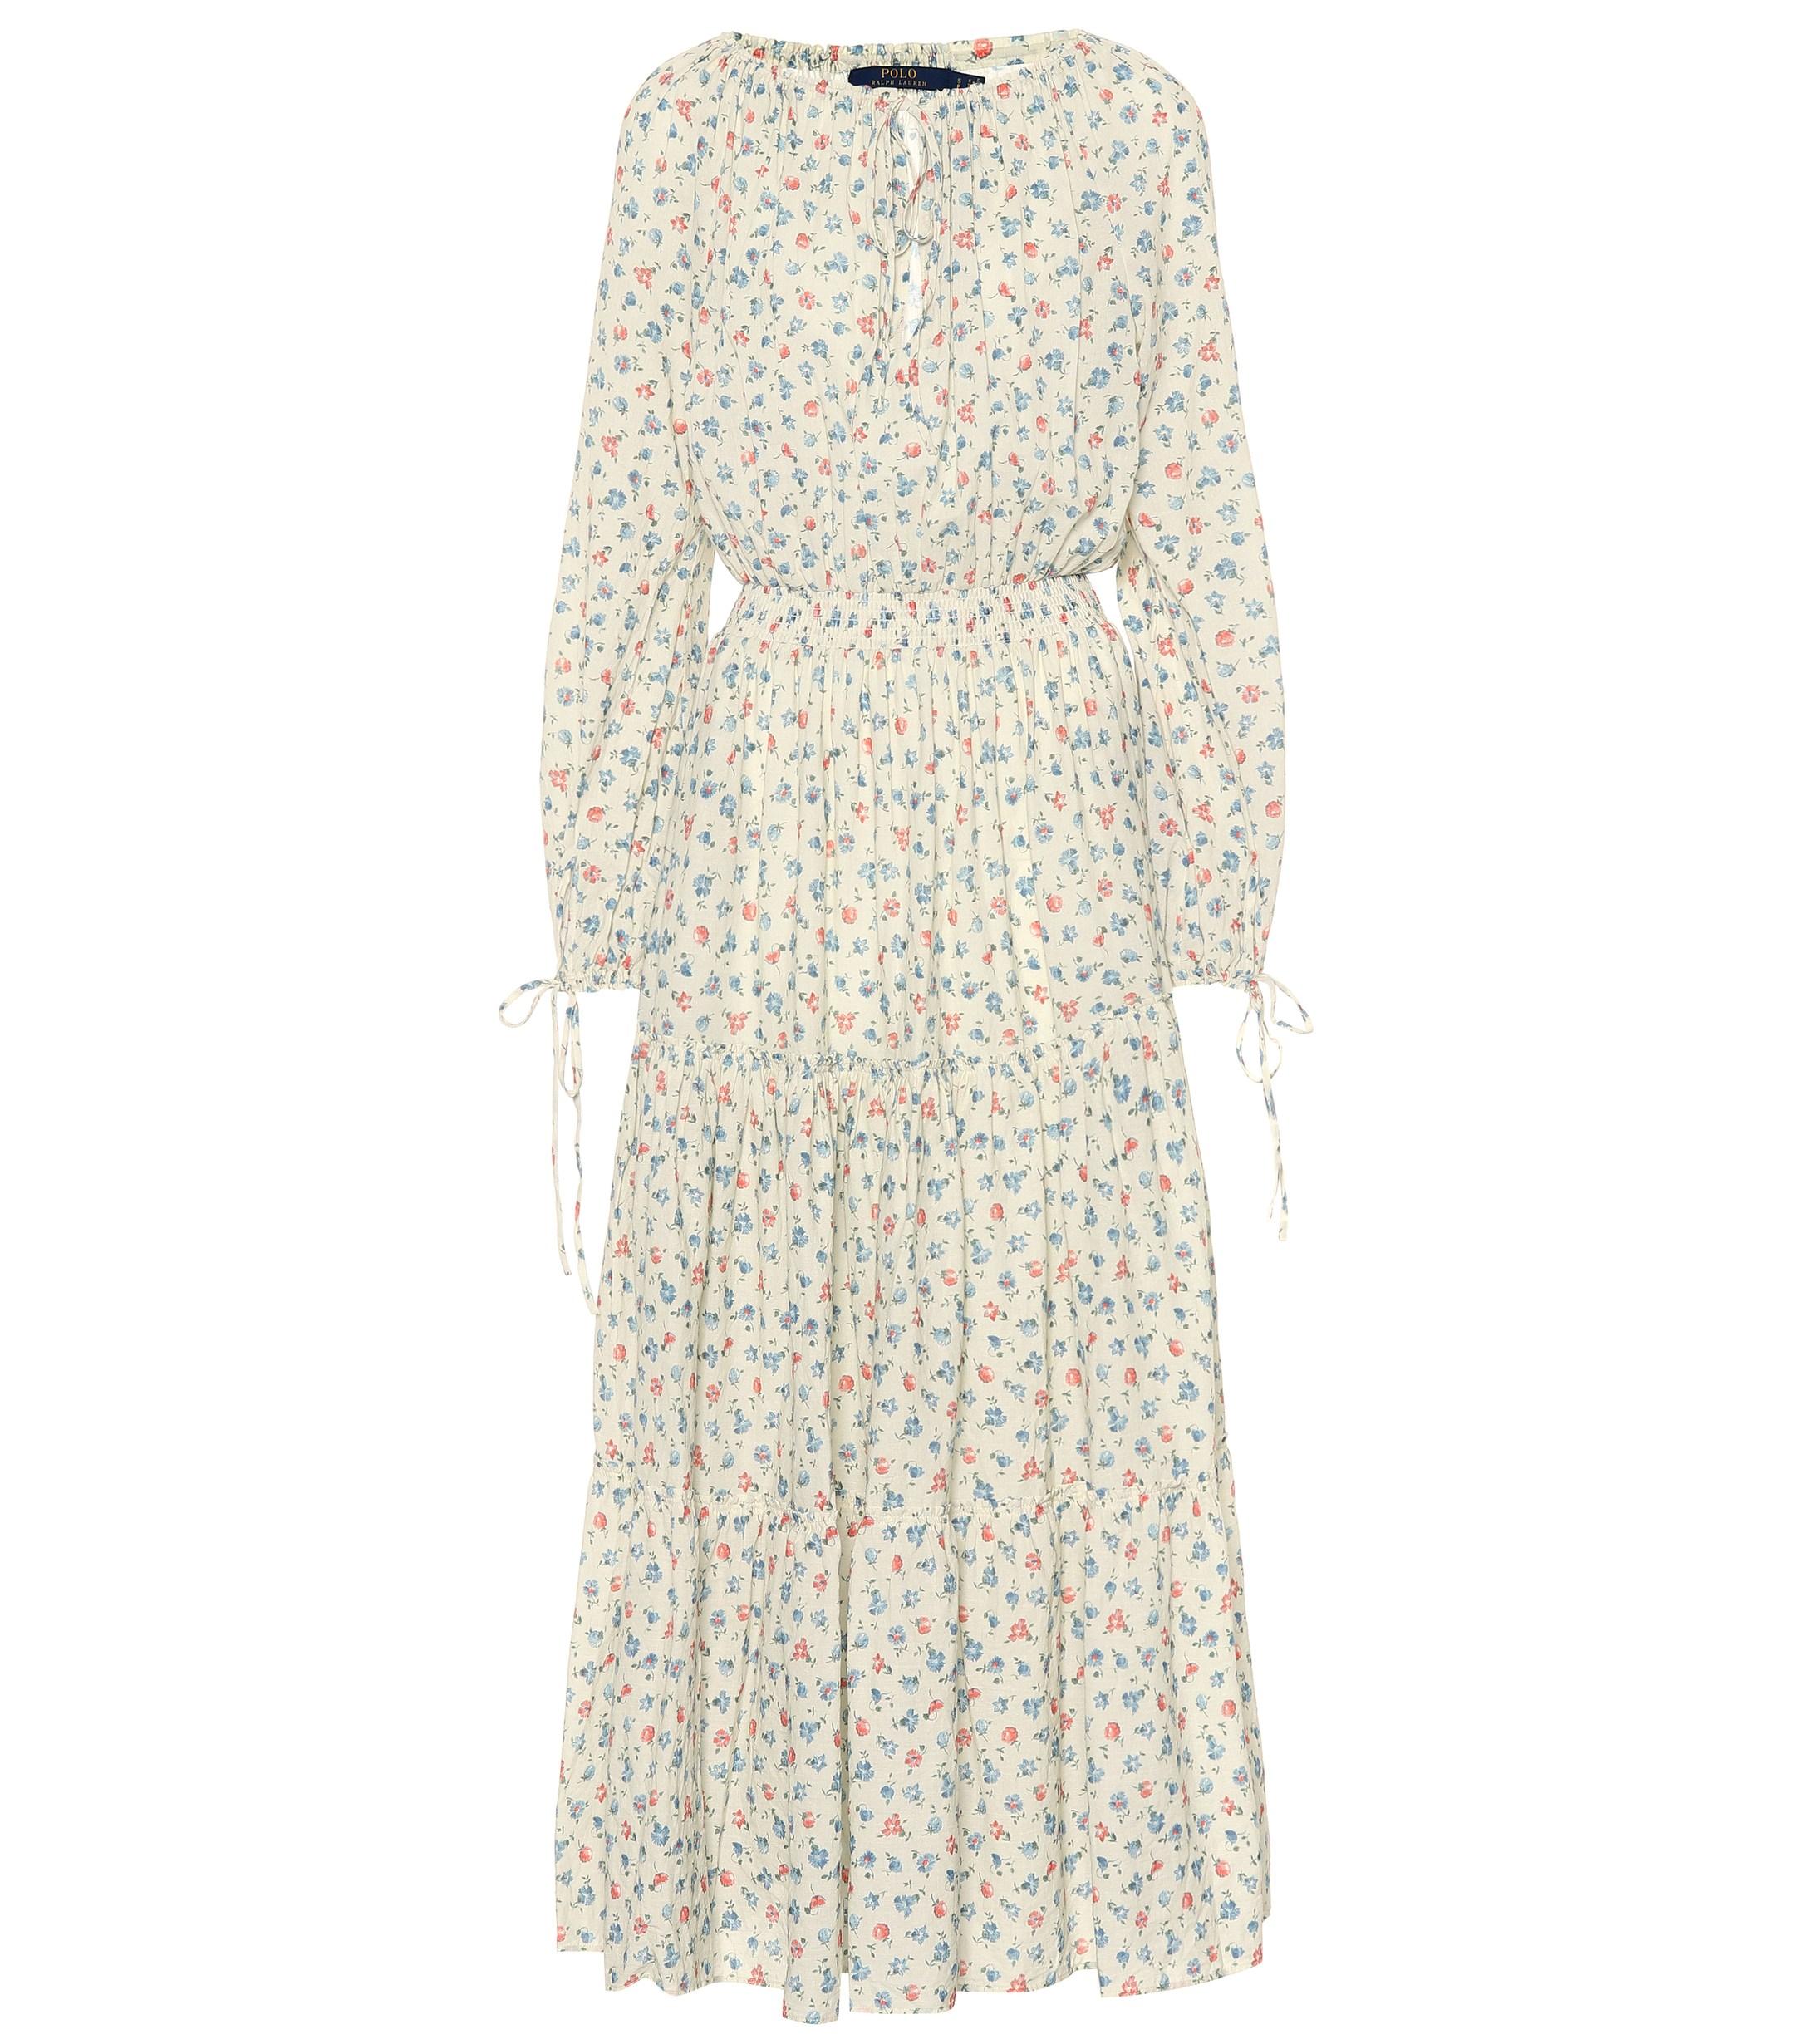 Polo Ralph Lauren Cotton Floral Gauze Dress | Lyst Australia